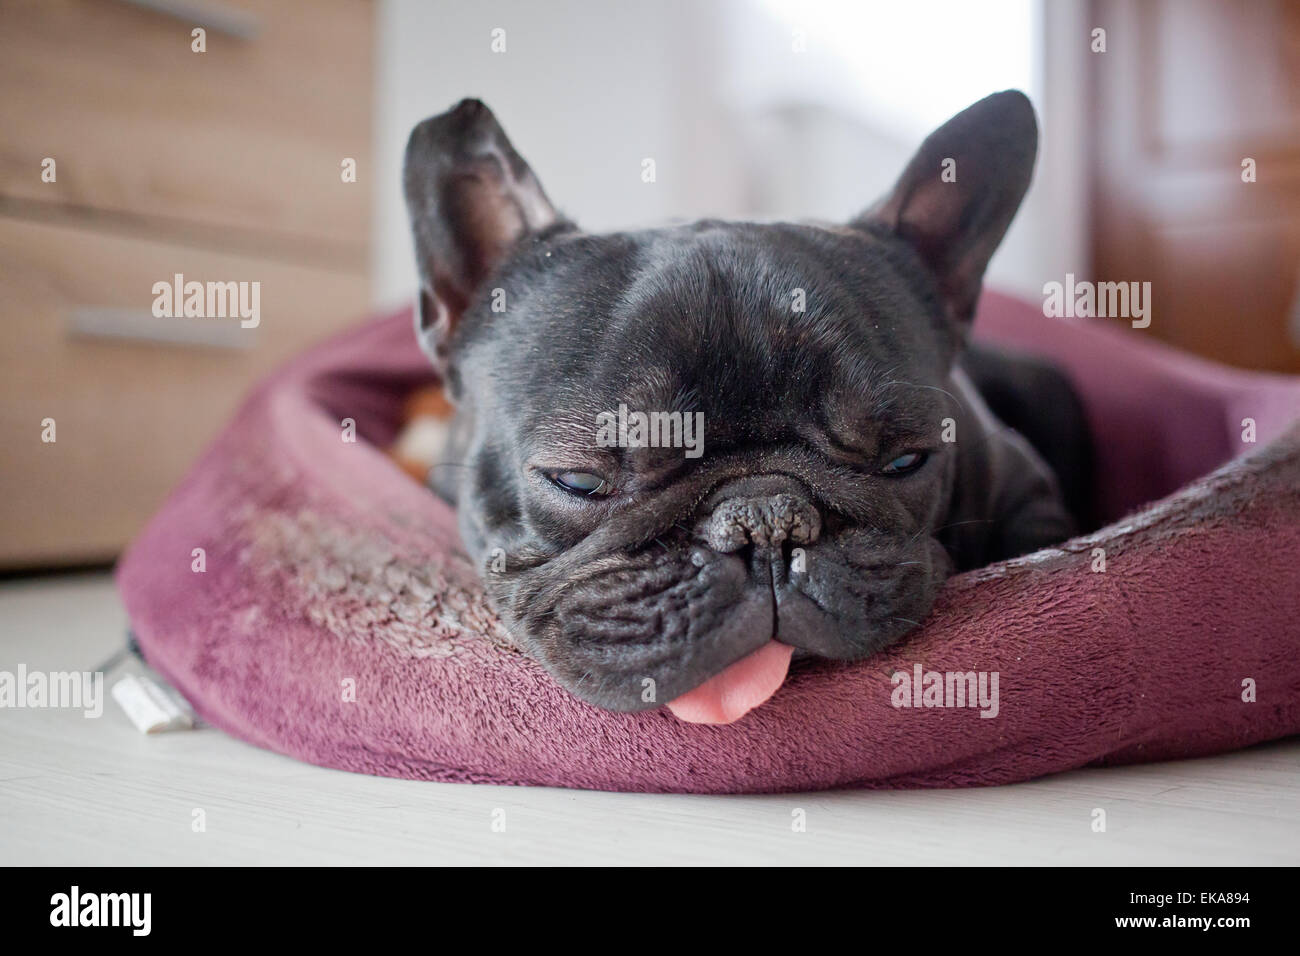 französische Bulldogge im Bett schlafen Stockfotografie - Alamy